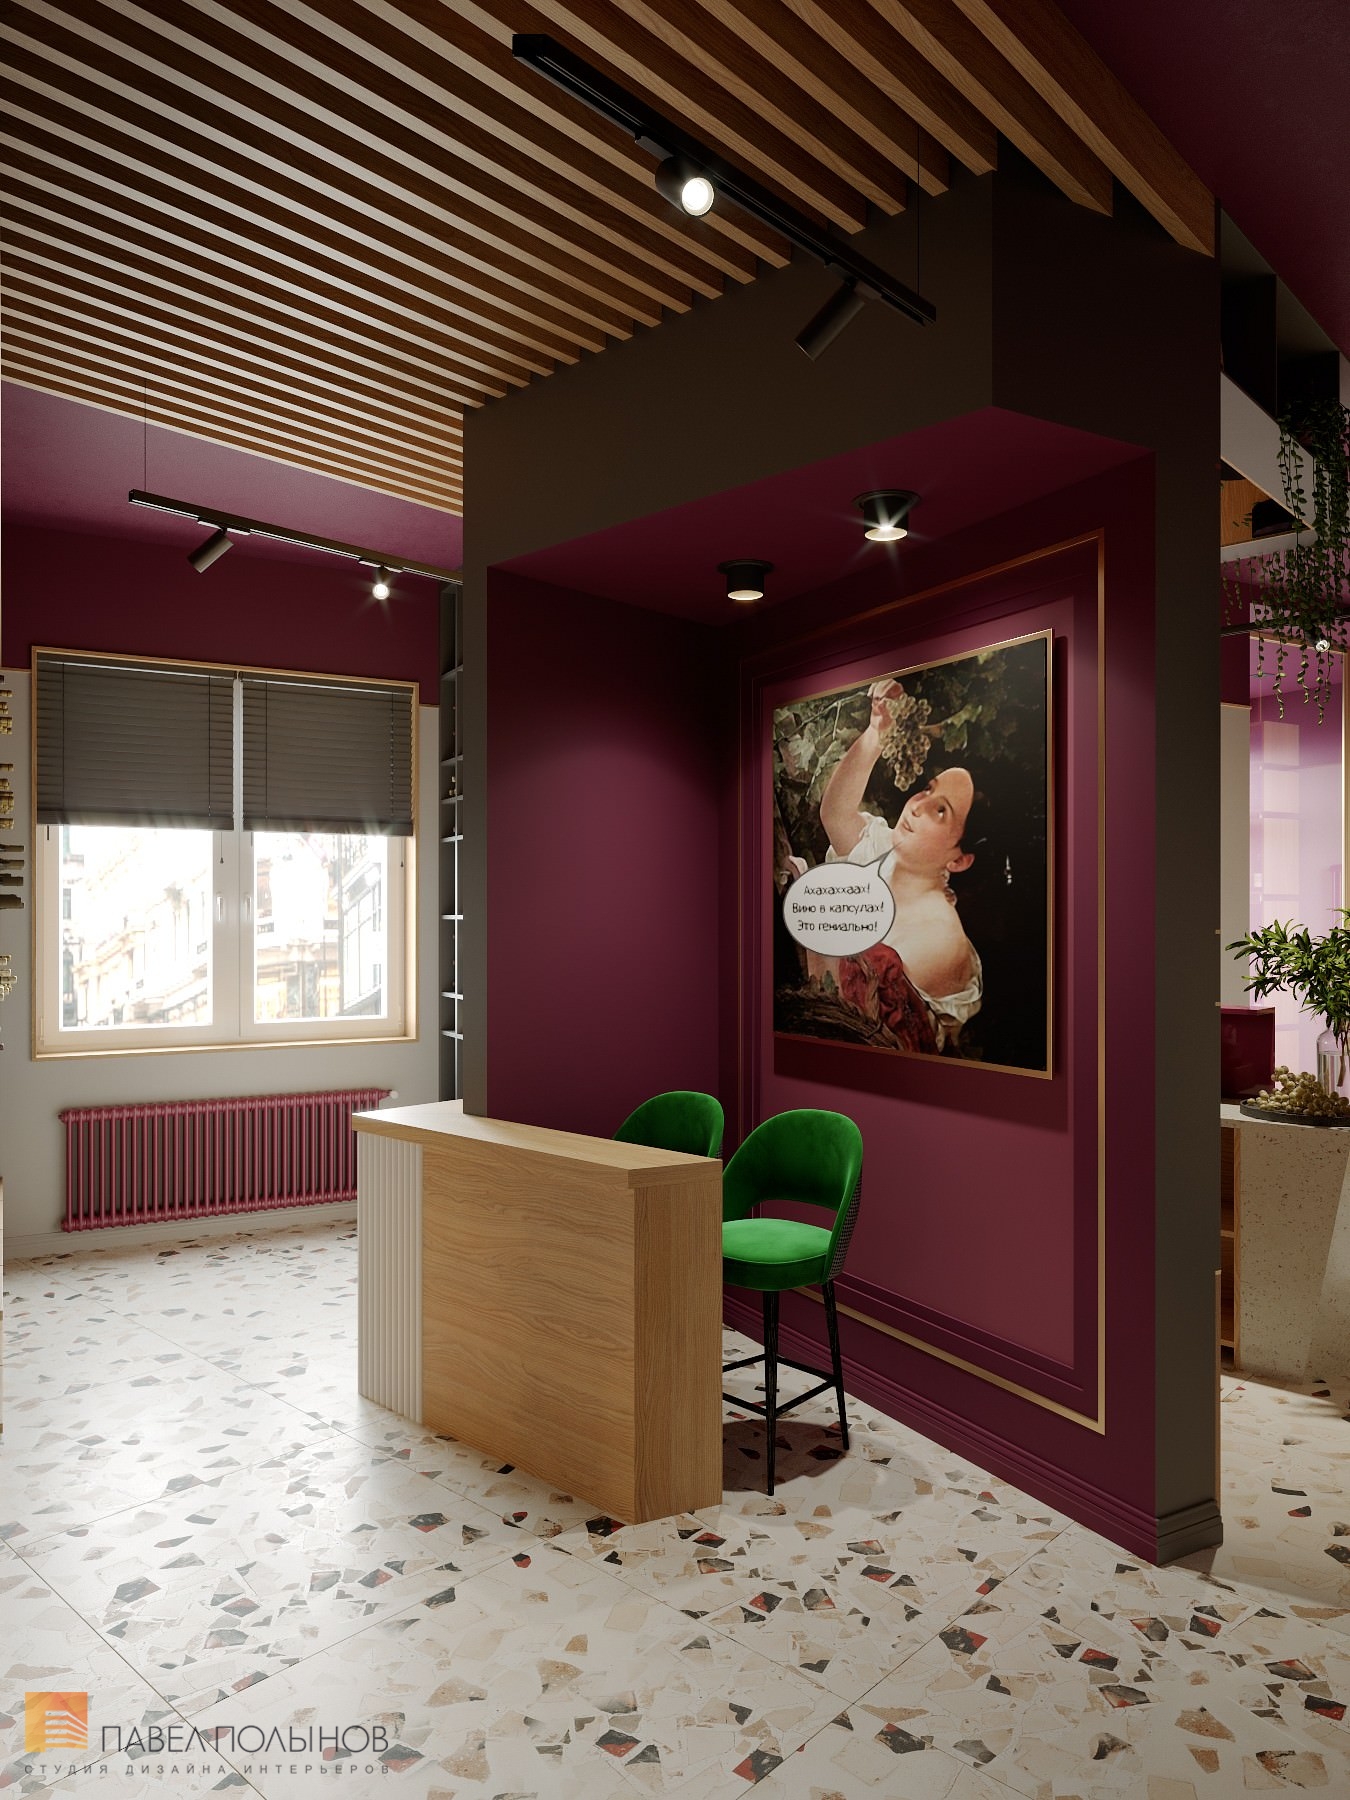 Фото зал винотеки из проекта «Дизайн интерьера винного магазина «Винолучи», 135 кв.м. »